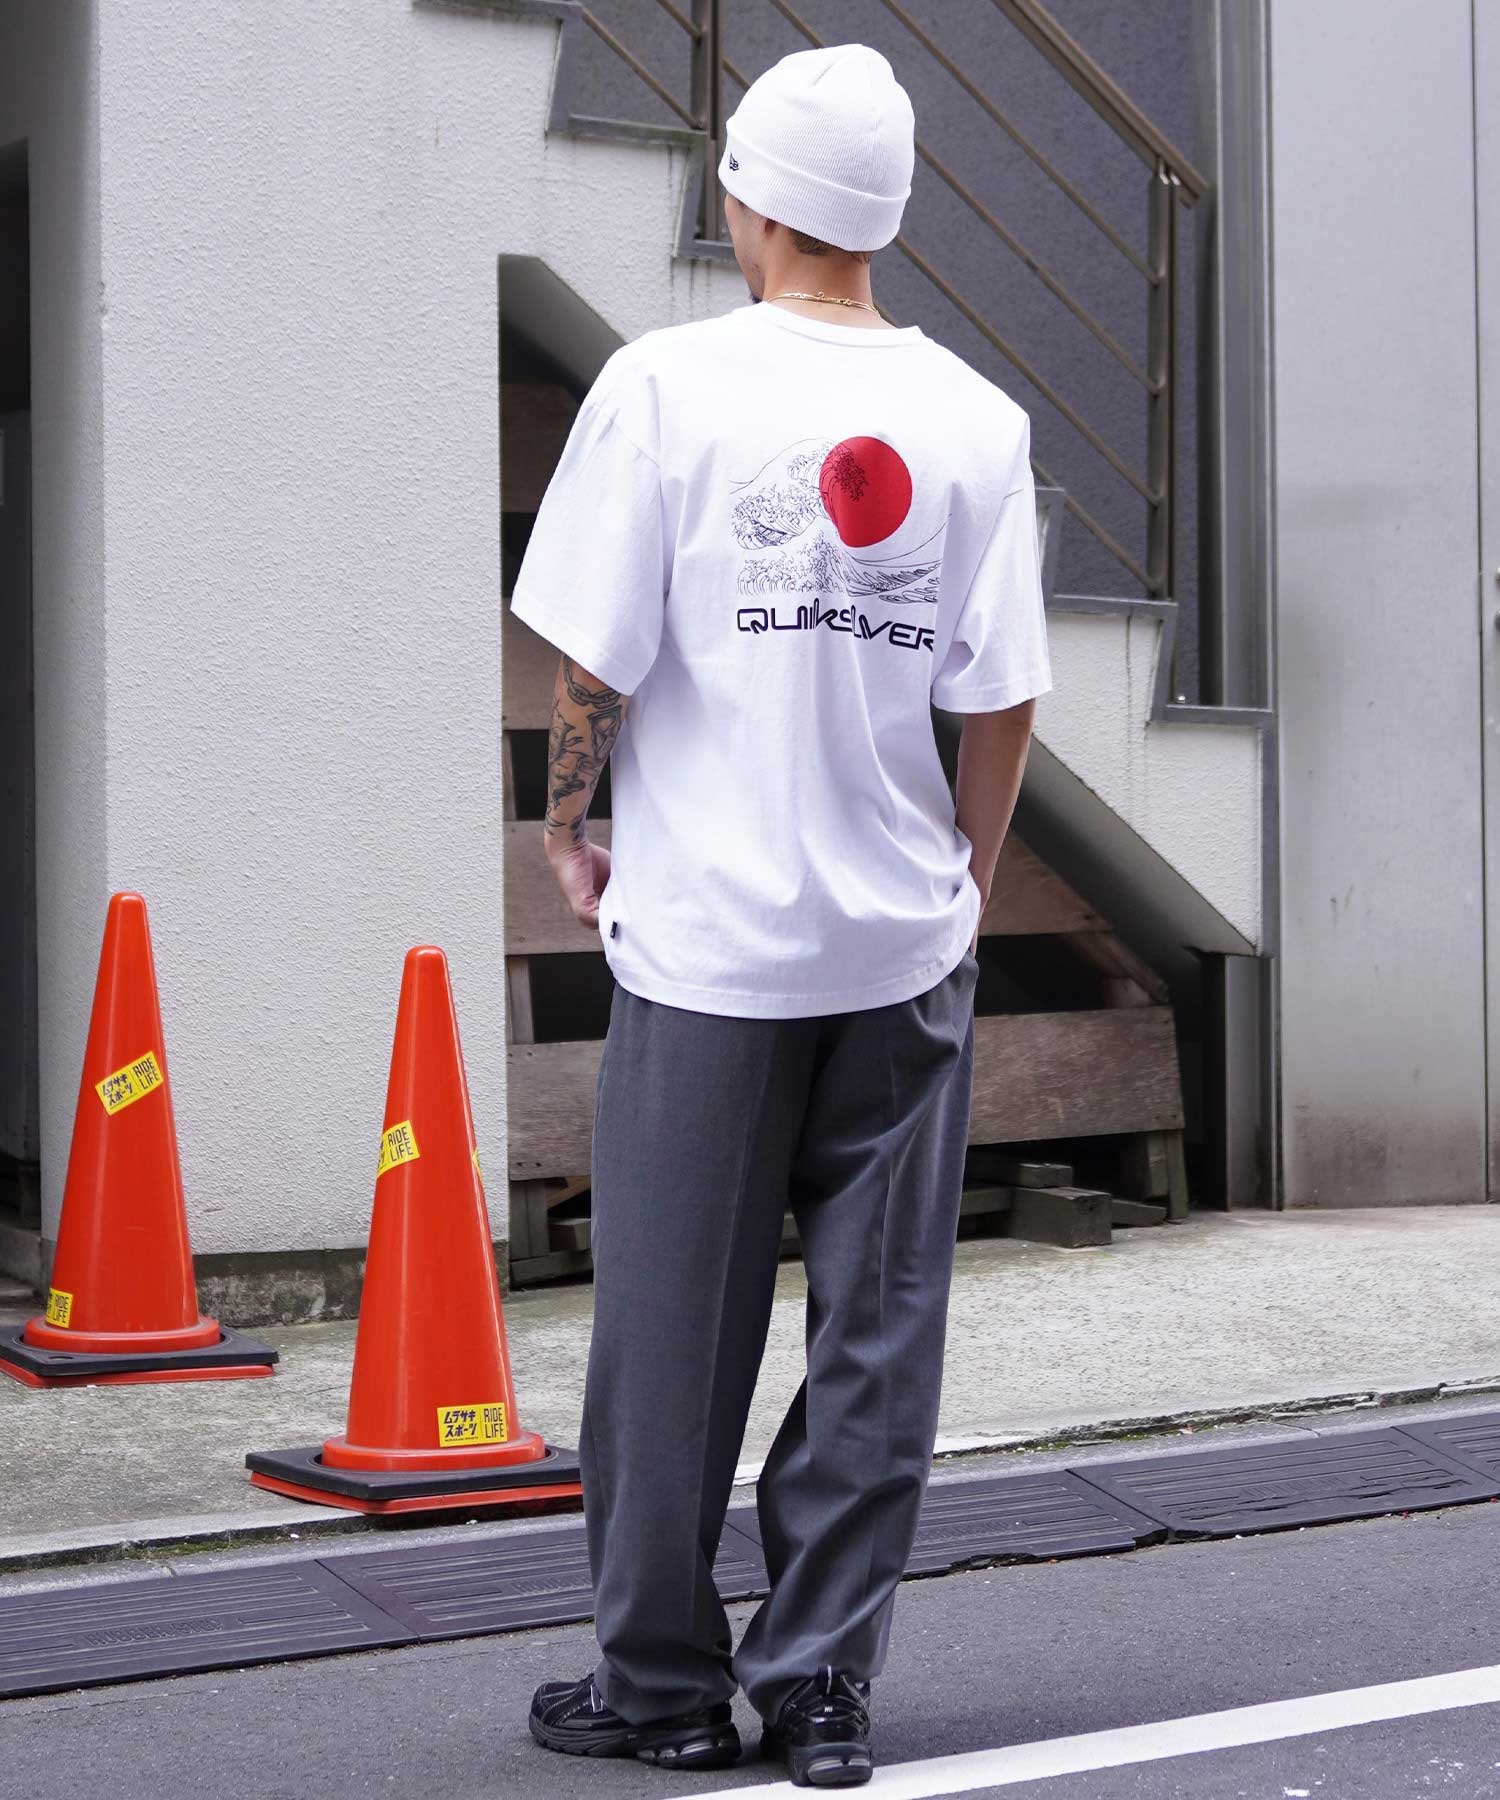 【ムラサキスポーツ限定】 QUIKSILVER クイックシルバー メンズ 半袖 Tシャツ オーバーサイズ バックプリント JAPAN QST245624M(BLK-M)